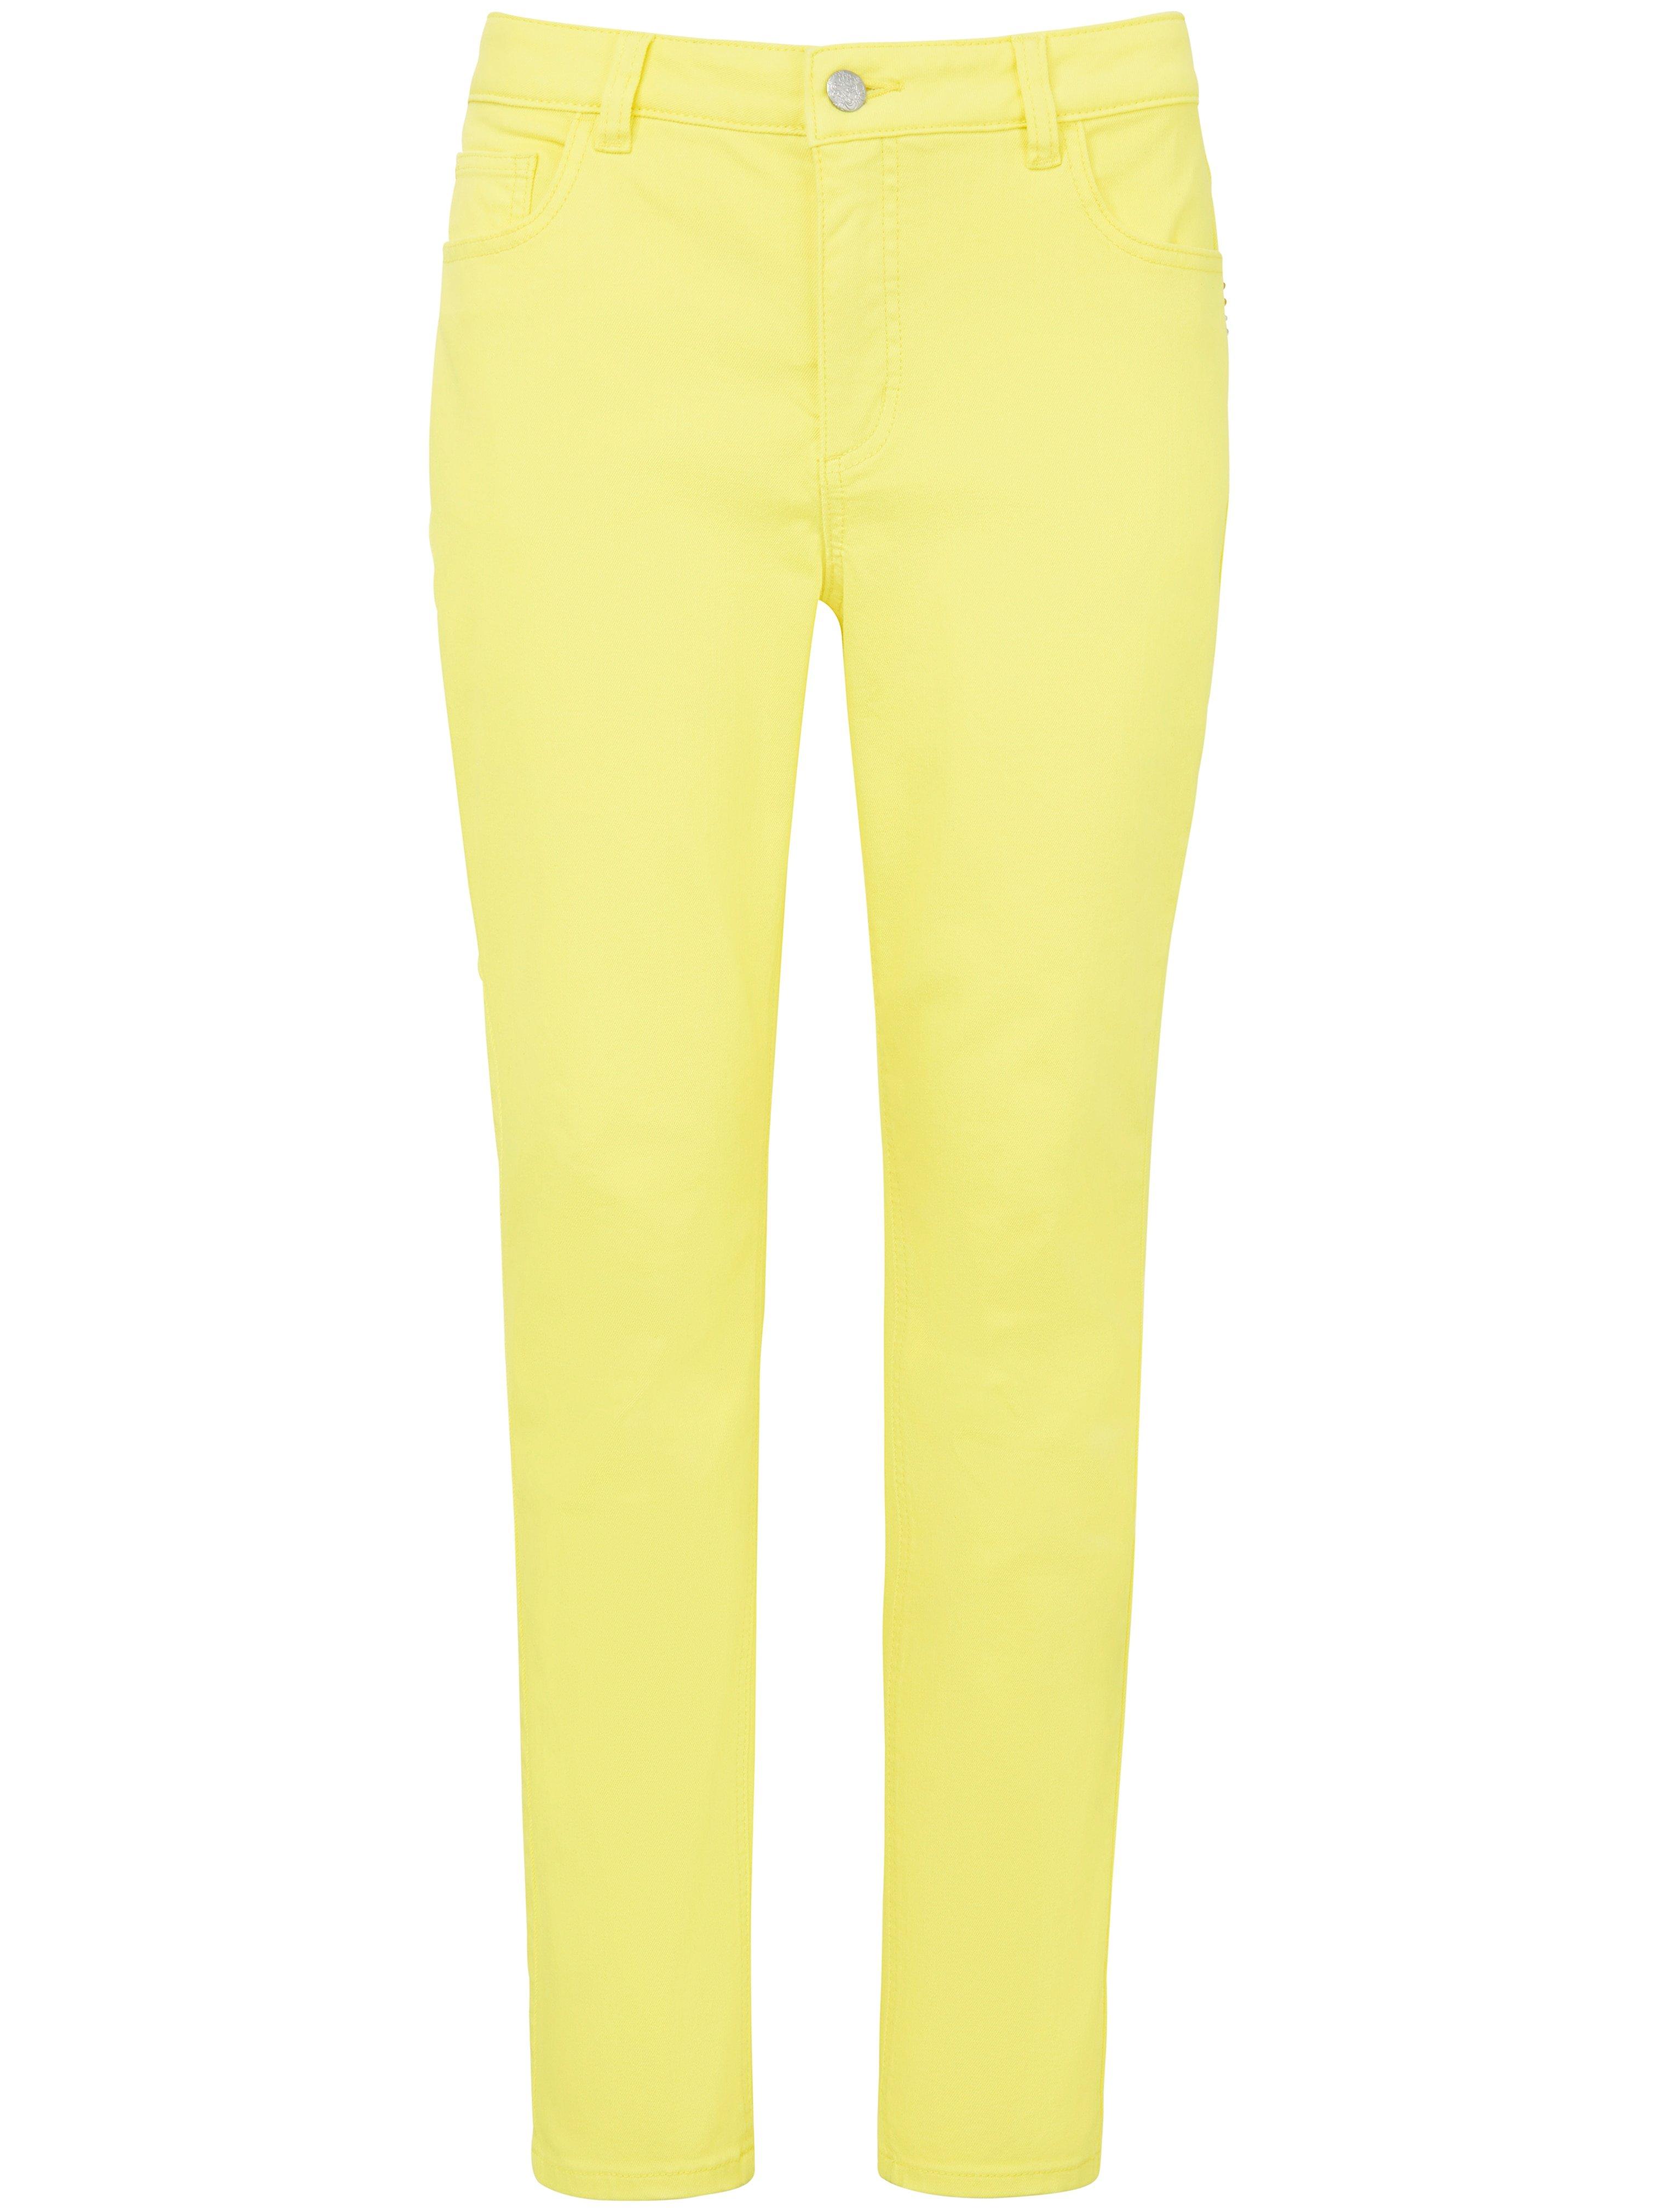 Enkellange jeans smalle pijpen Van MYBC geel